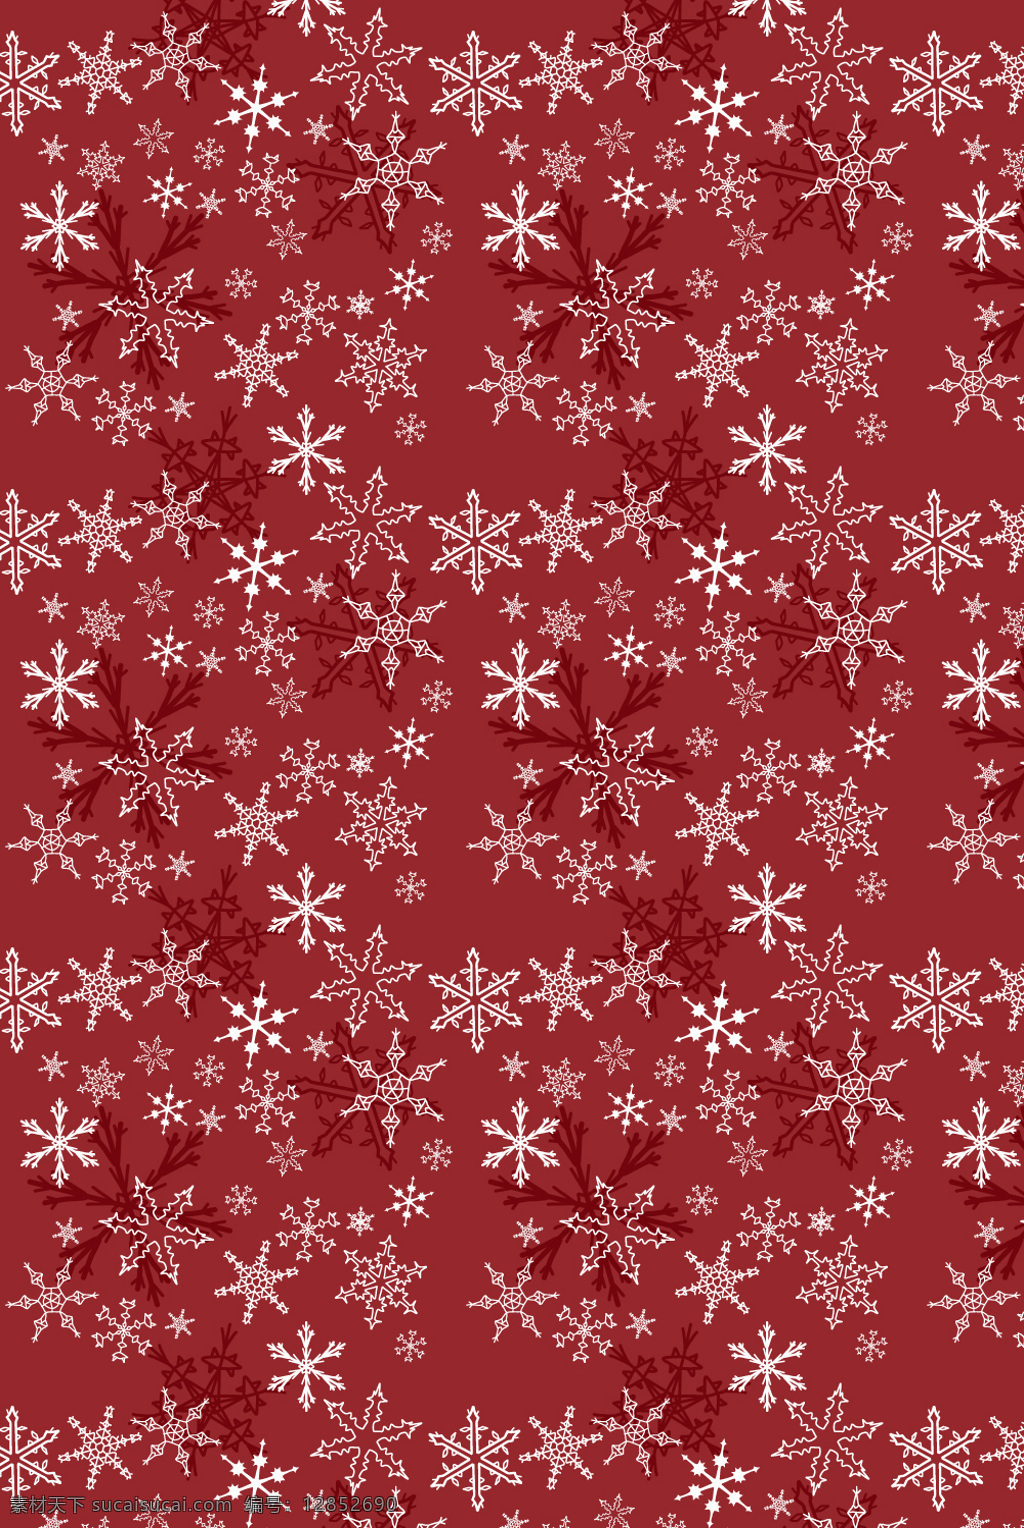 圣诞节 雪花 背景图 红色 白色 卡哇伊 礼物 喜庆 红 白 底纹边框 背景底纹